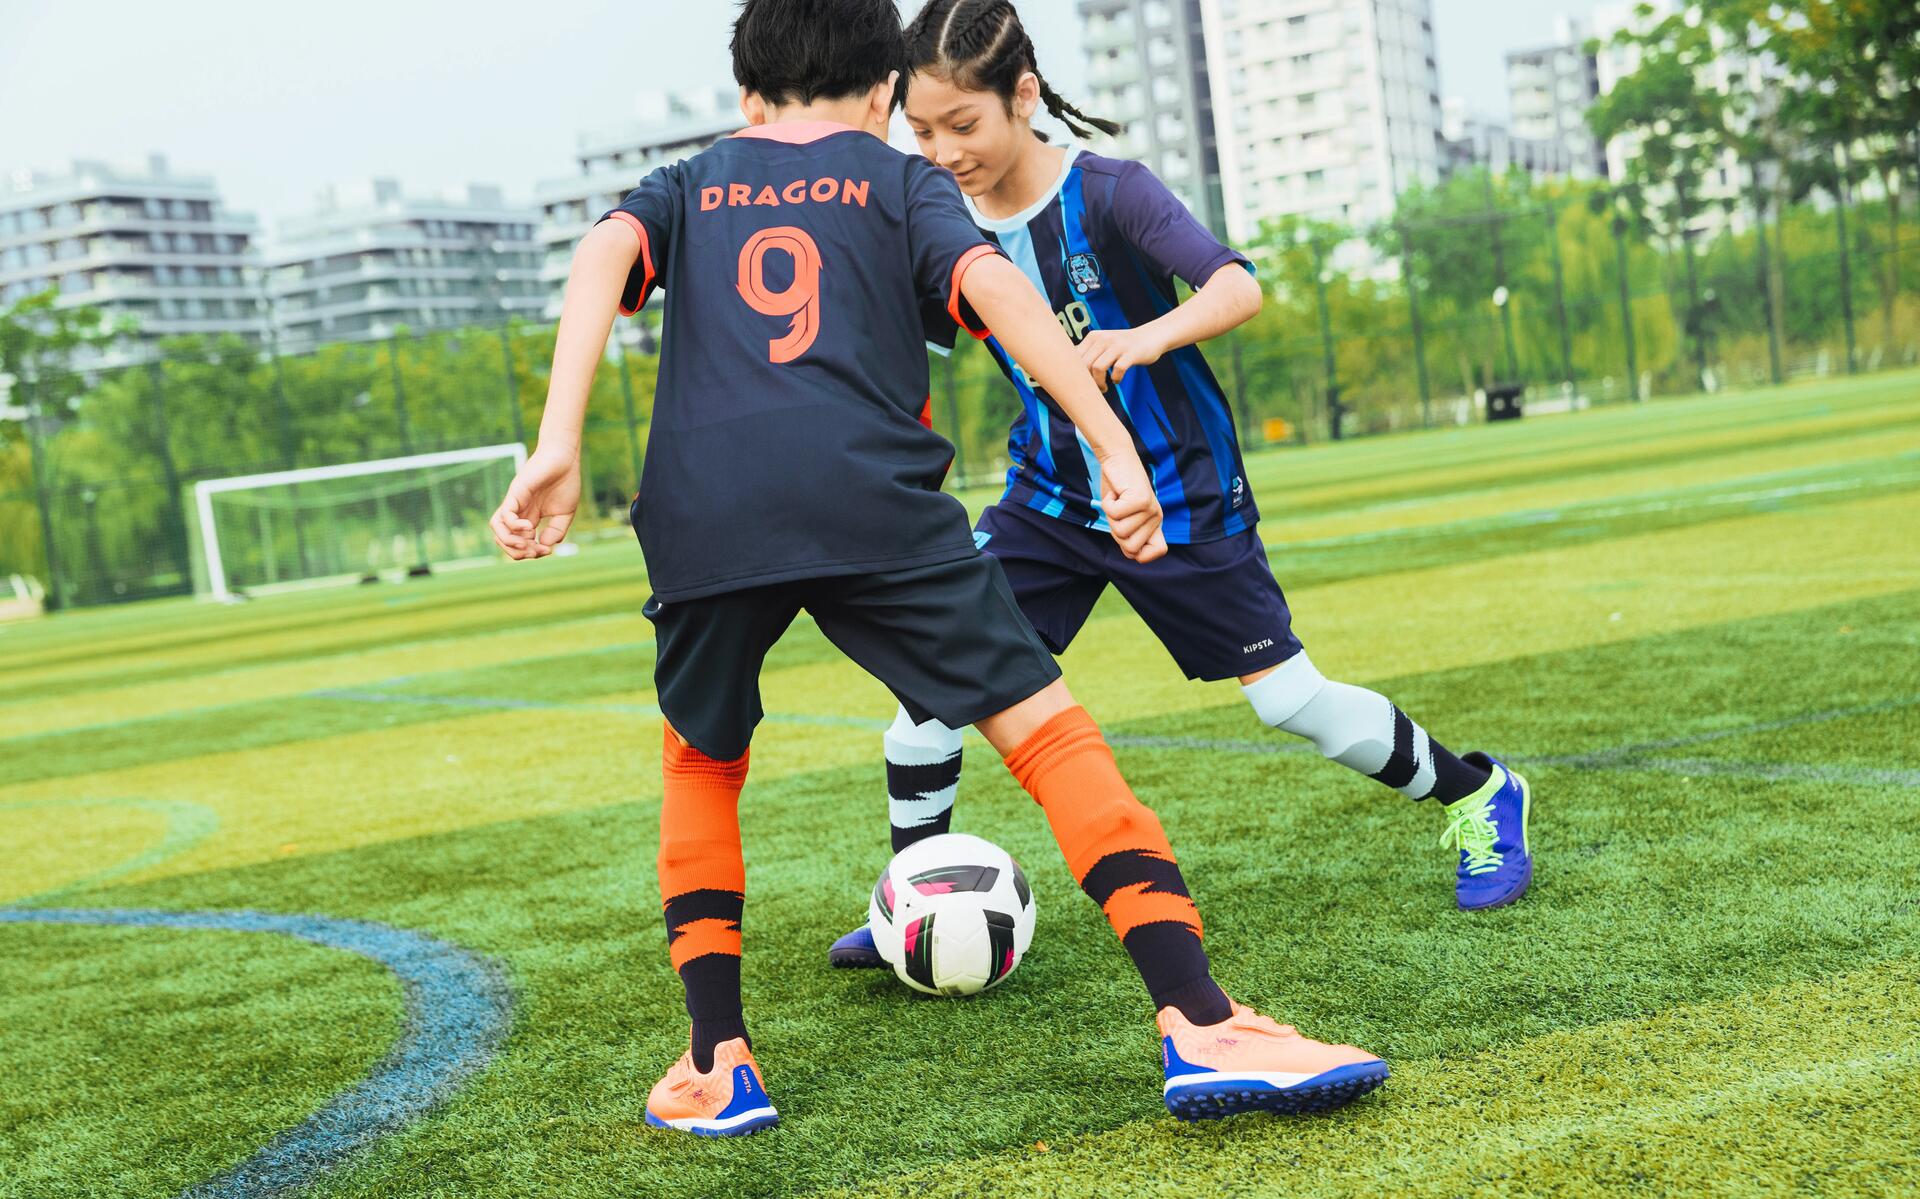 chłopcy w odzieży piłkarskiej walczący o piłkę podczas treningu piłkarskiego na boisku